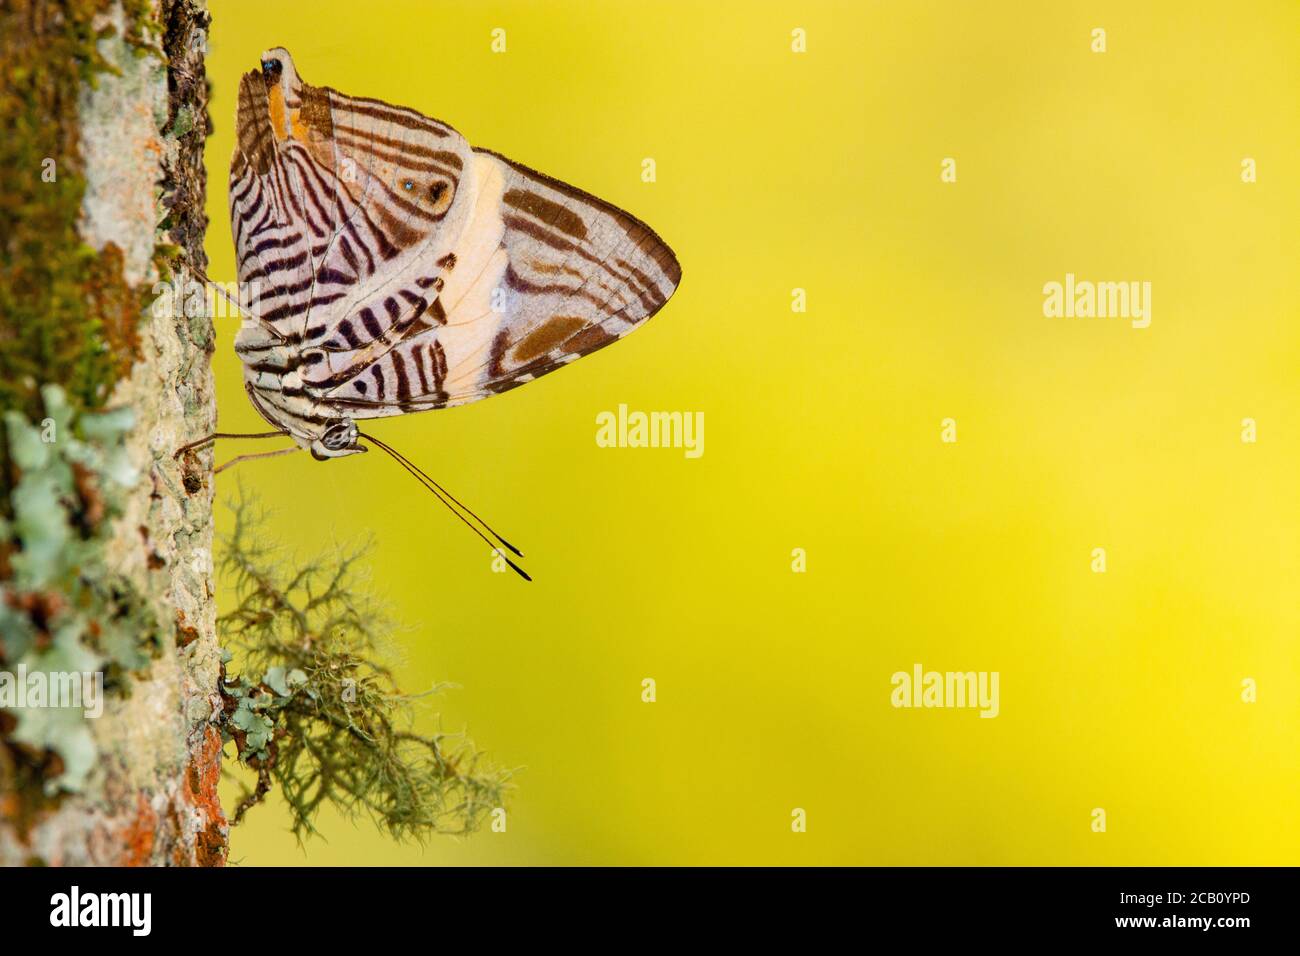 Dirce Schönheit, Mosaik oder Zebramosaik (Colobura dirce), ist ein Schmetterling der Familie Nymphalidae. Icononzo, Tolima, Kolumbien Stockfoto